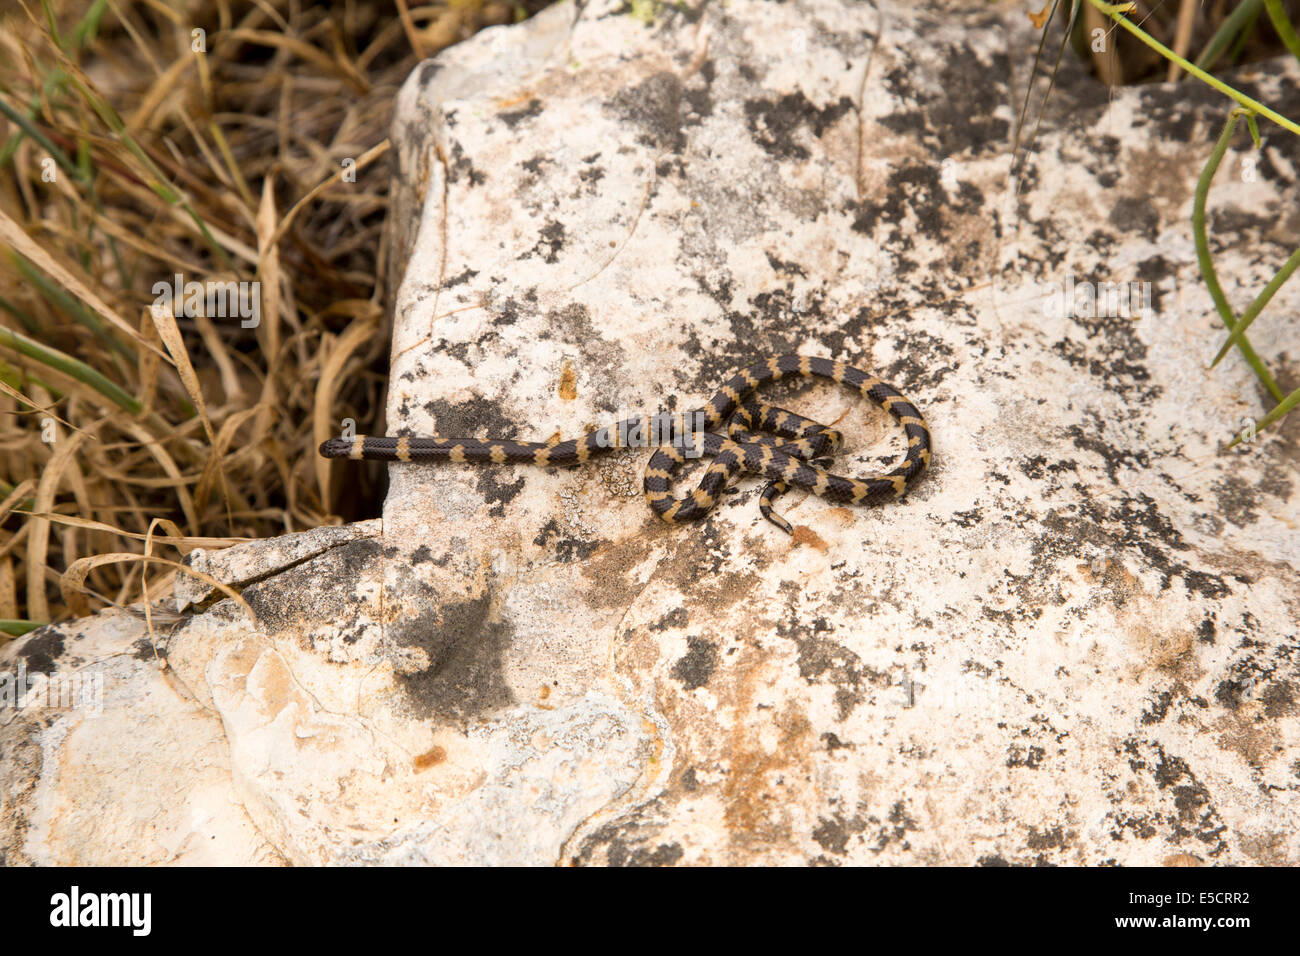 Mueller's snake à deux têtes (Micrelaps muelleri) un arrière-Atractaspidid à crochets venimeux espèce endémique de la région du Moyen-Orient. Photogr Banque D'Images